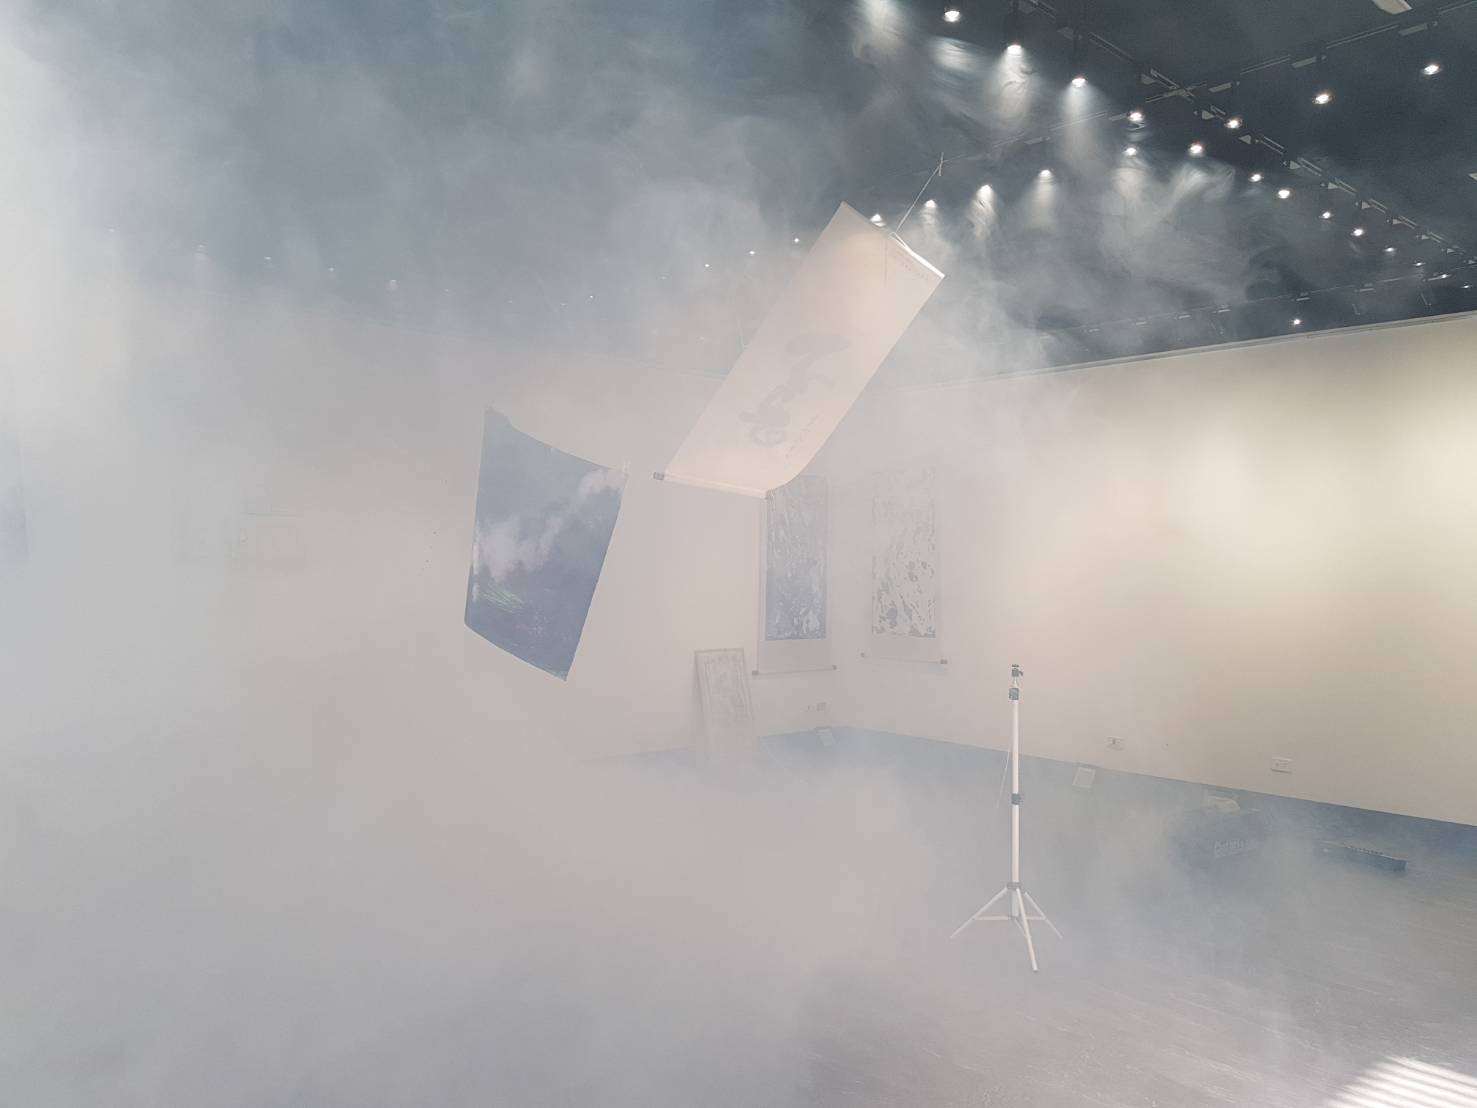 補充說明：  展場看到的煙霧是用演唱會活動霧氣效果的專門設備製造的。  是環保無毒的媒材。  且目前大家都有戴口罩，因此對身體無害。